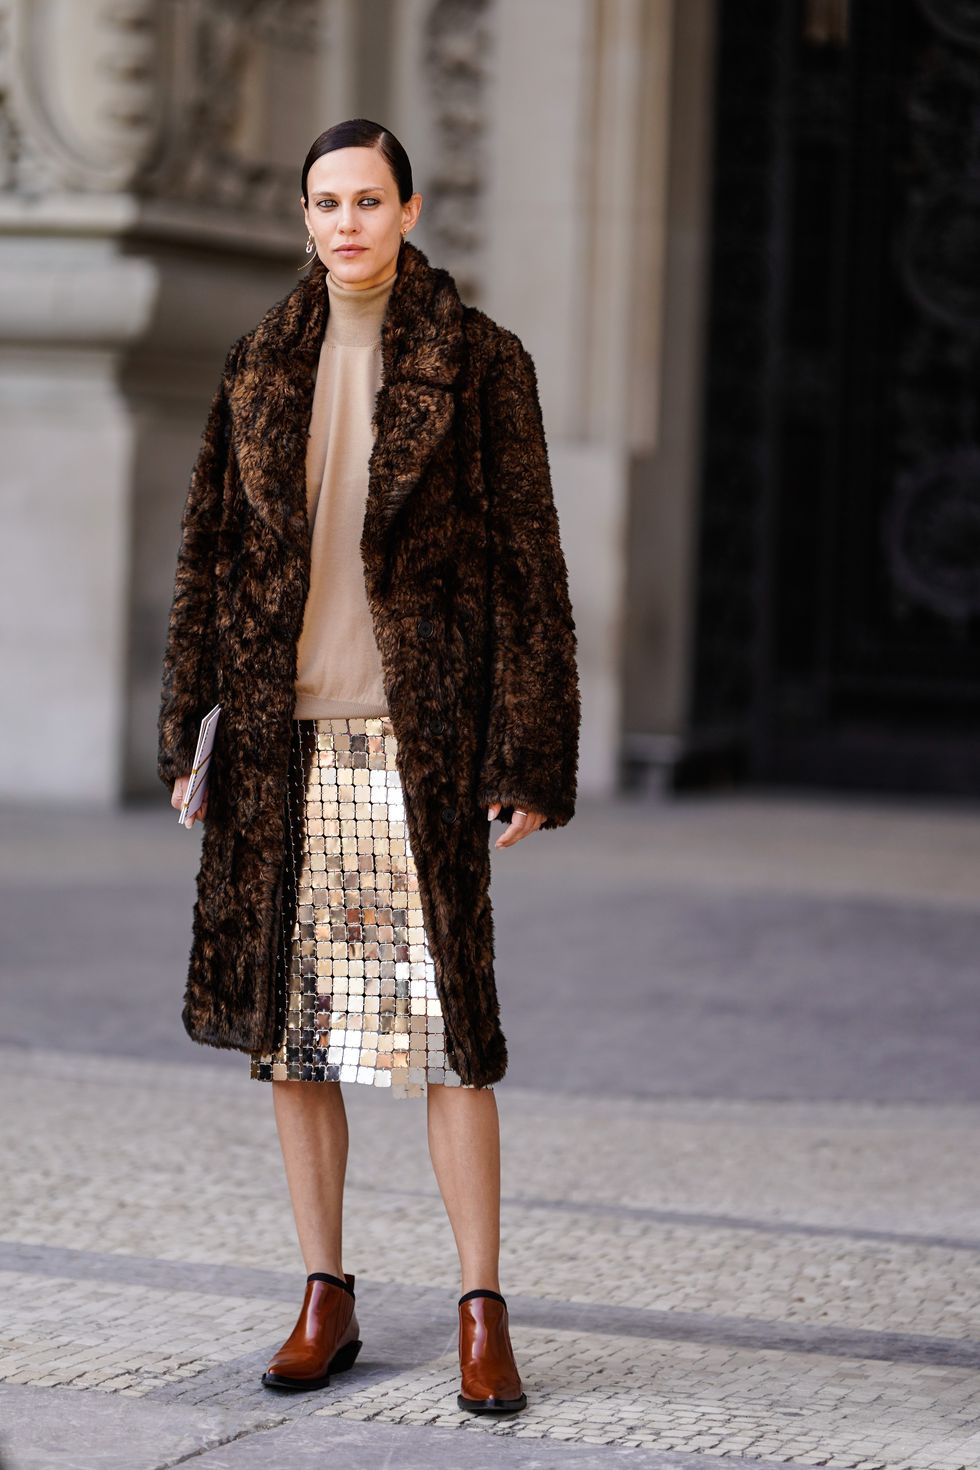 streetstyle paris fashion week, come vestirsi minimal chic, come vestire minimal, come vestirsi come una parigina